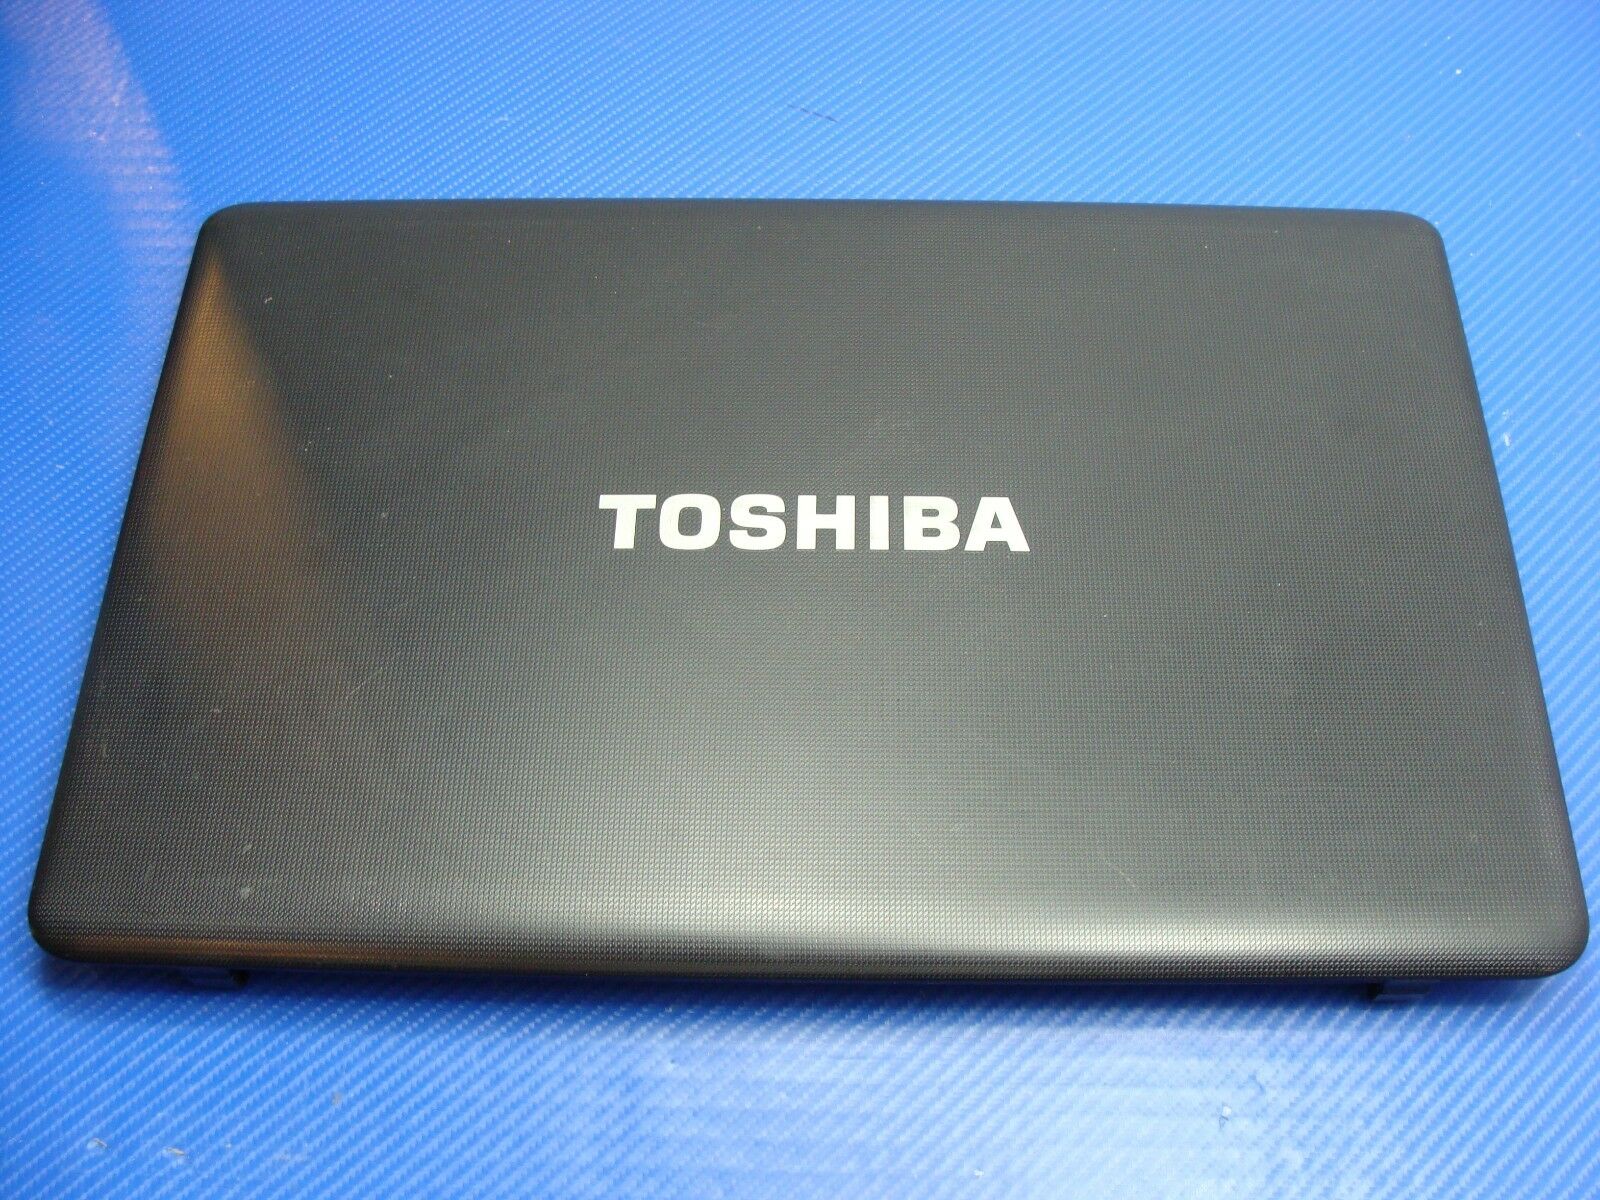 Toshiba Satellite 17.3